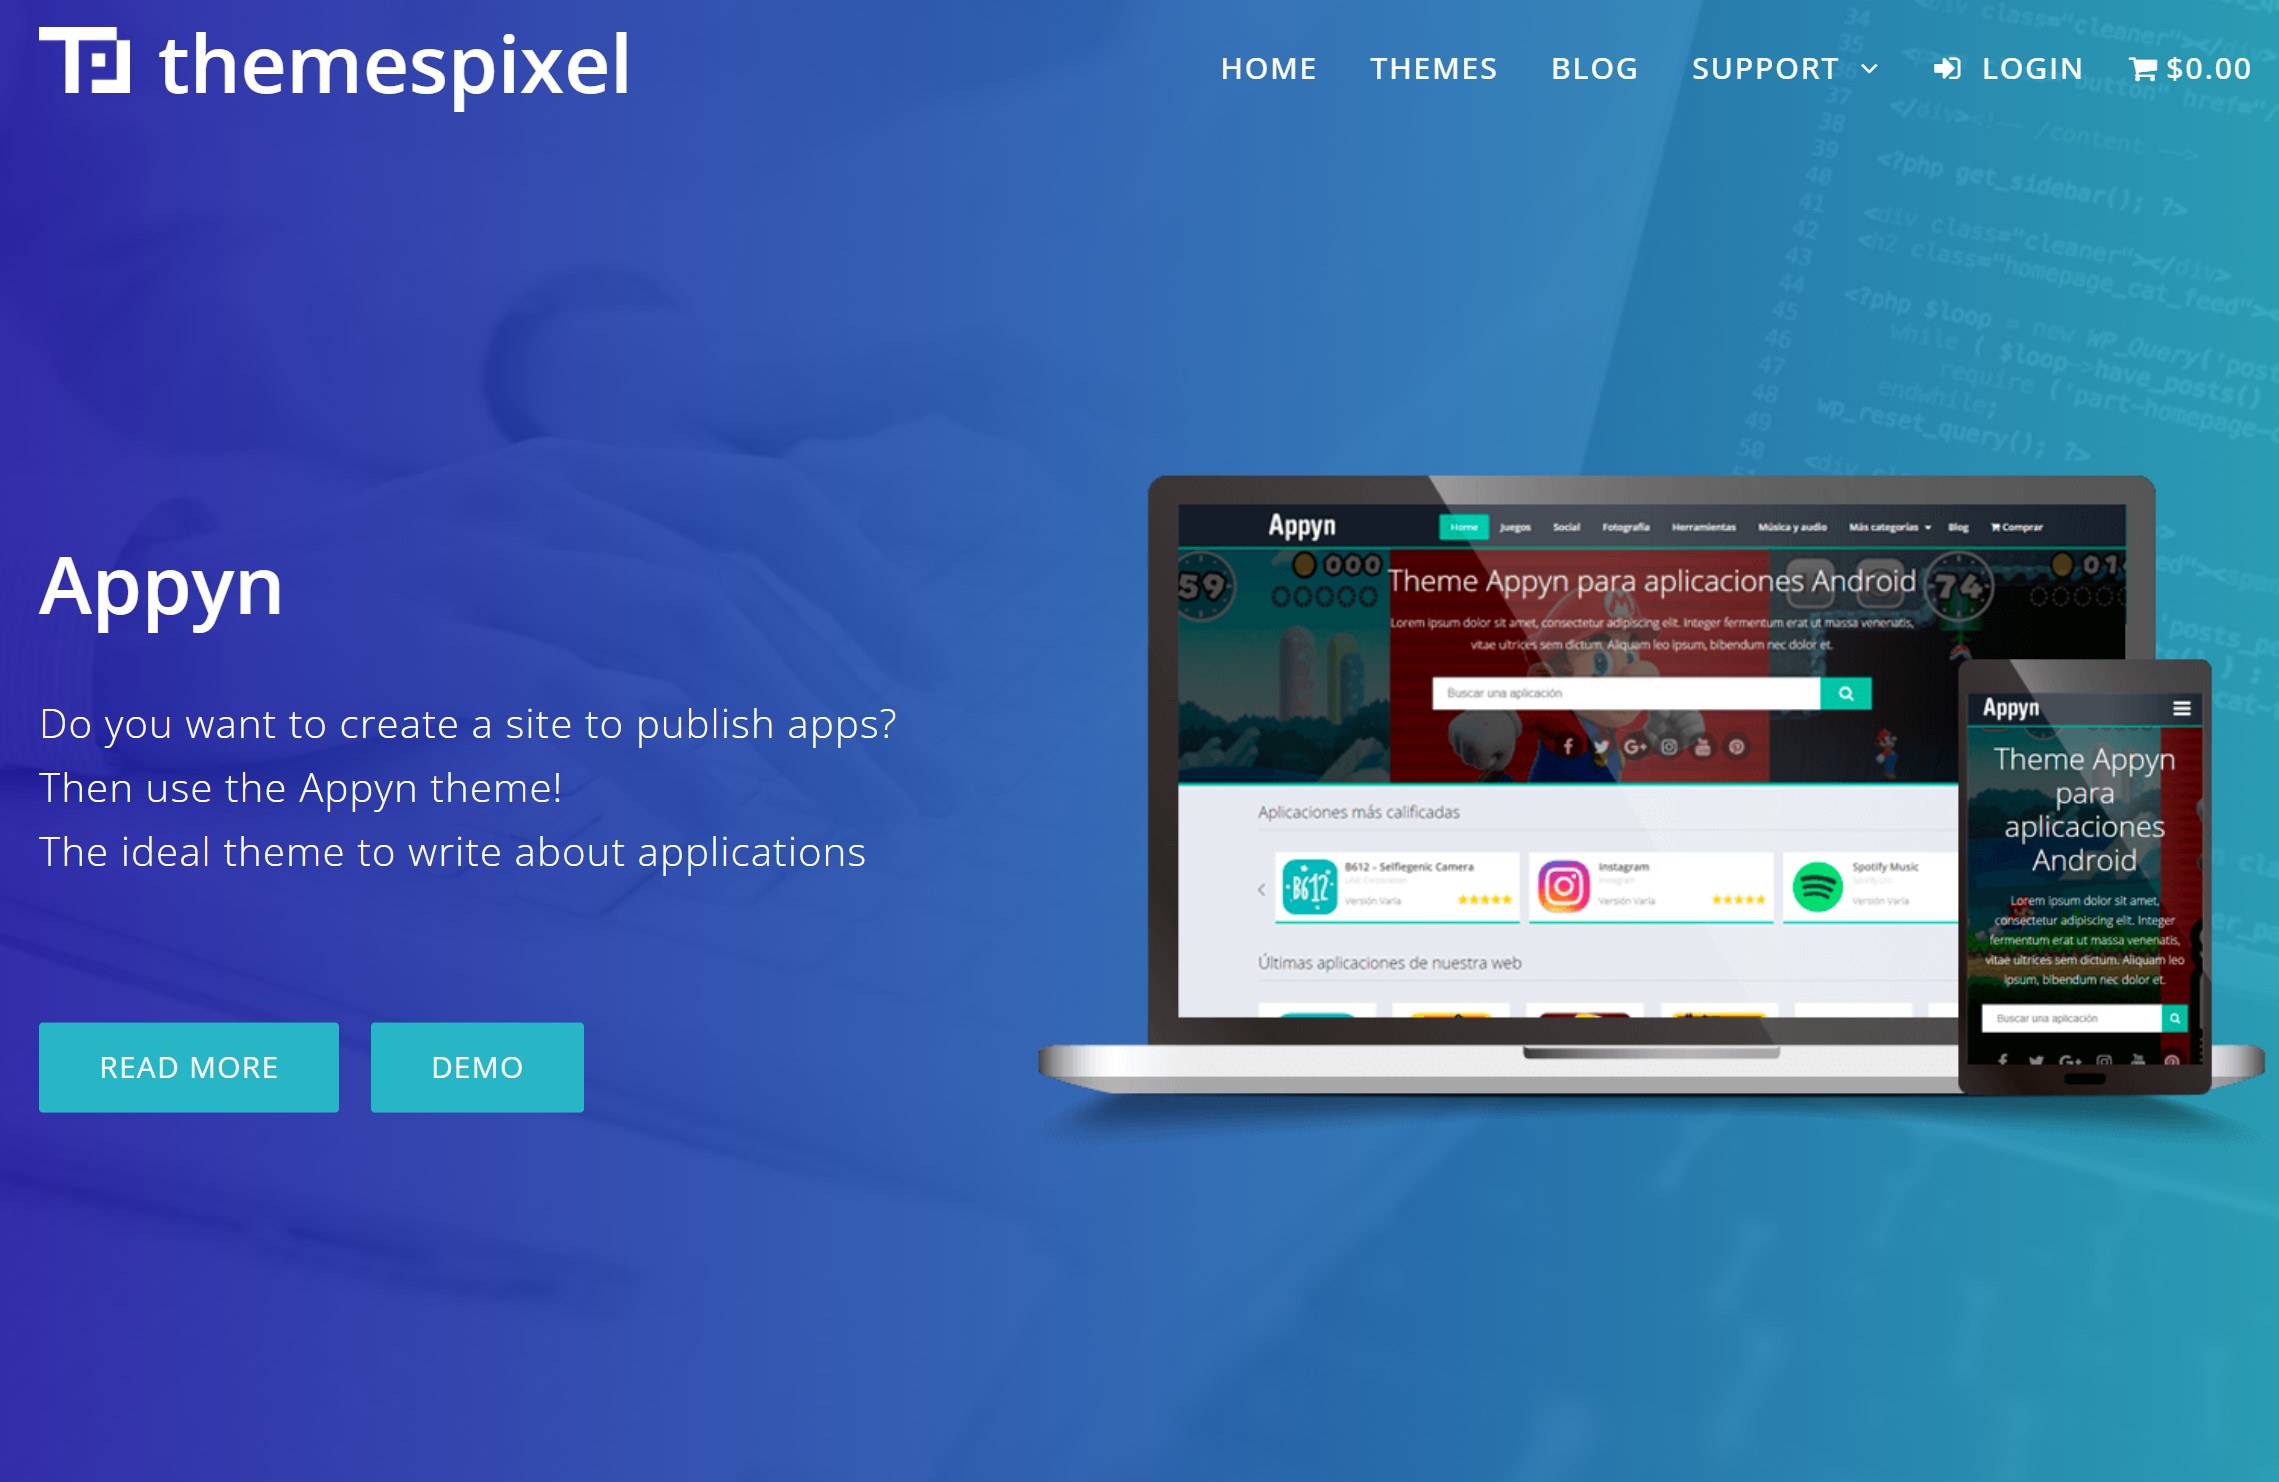 Appyn – Themespixel WordPress Theme 2.0.9